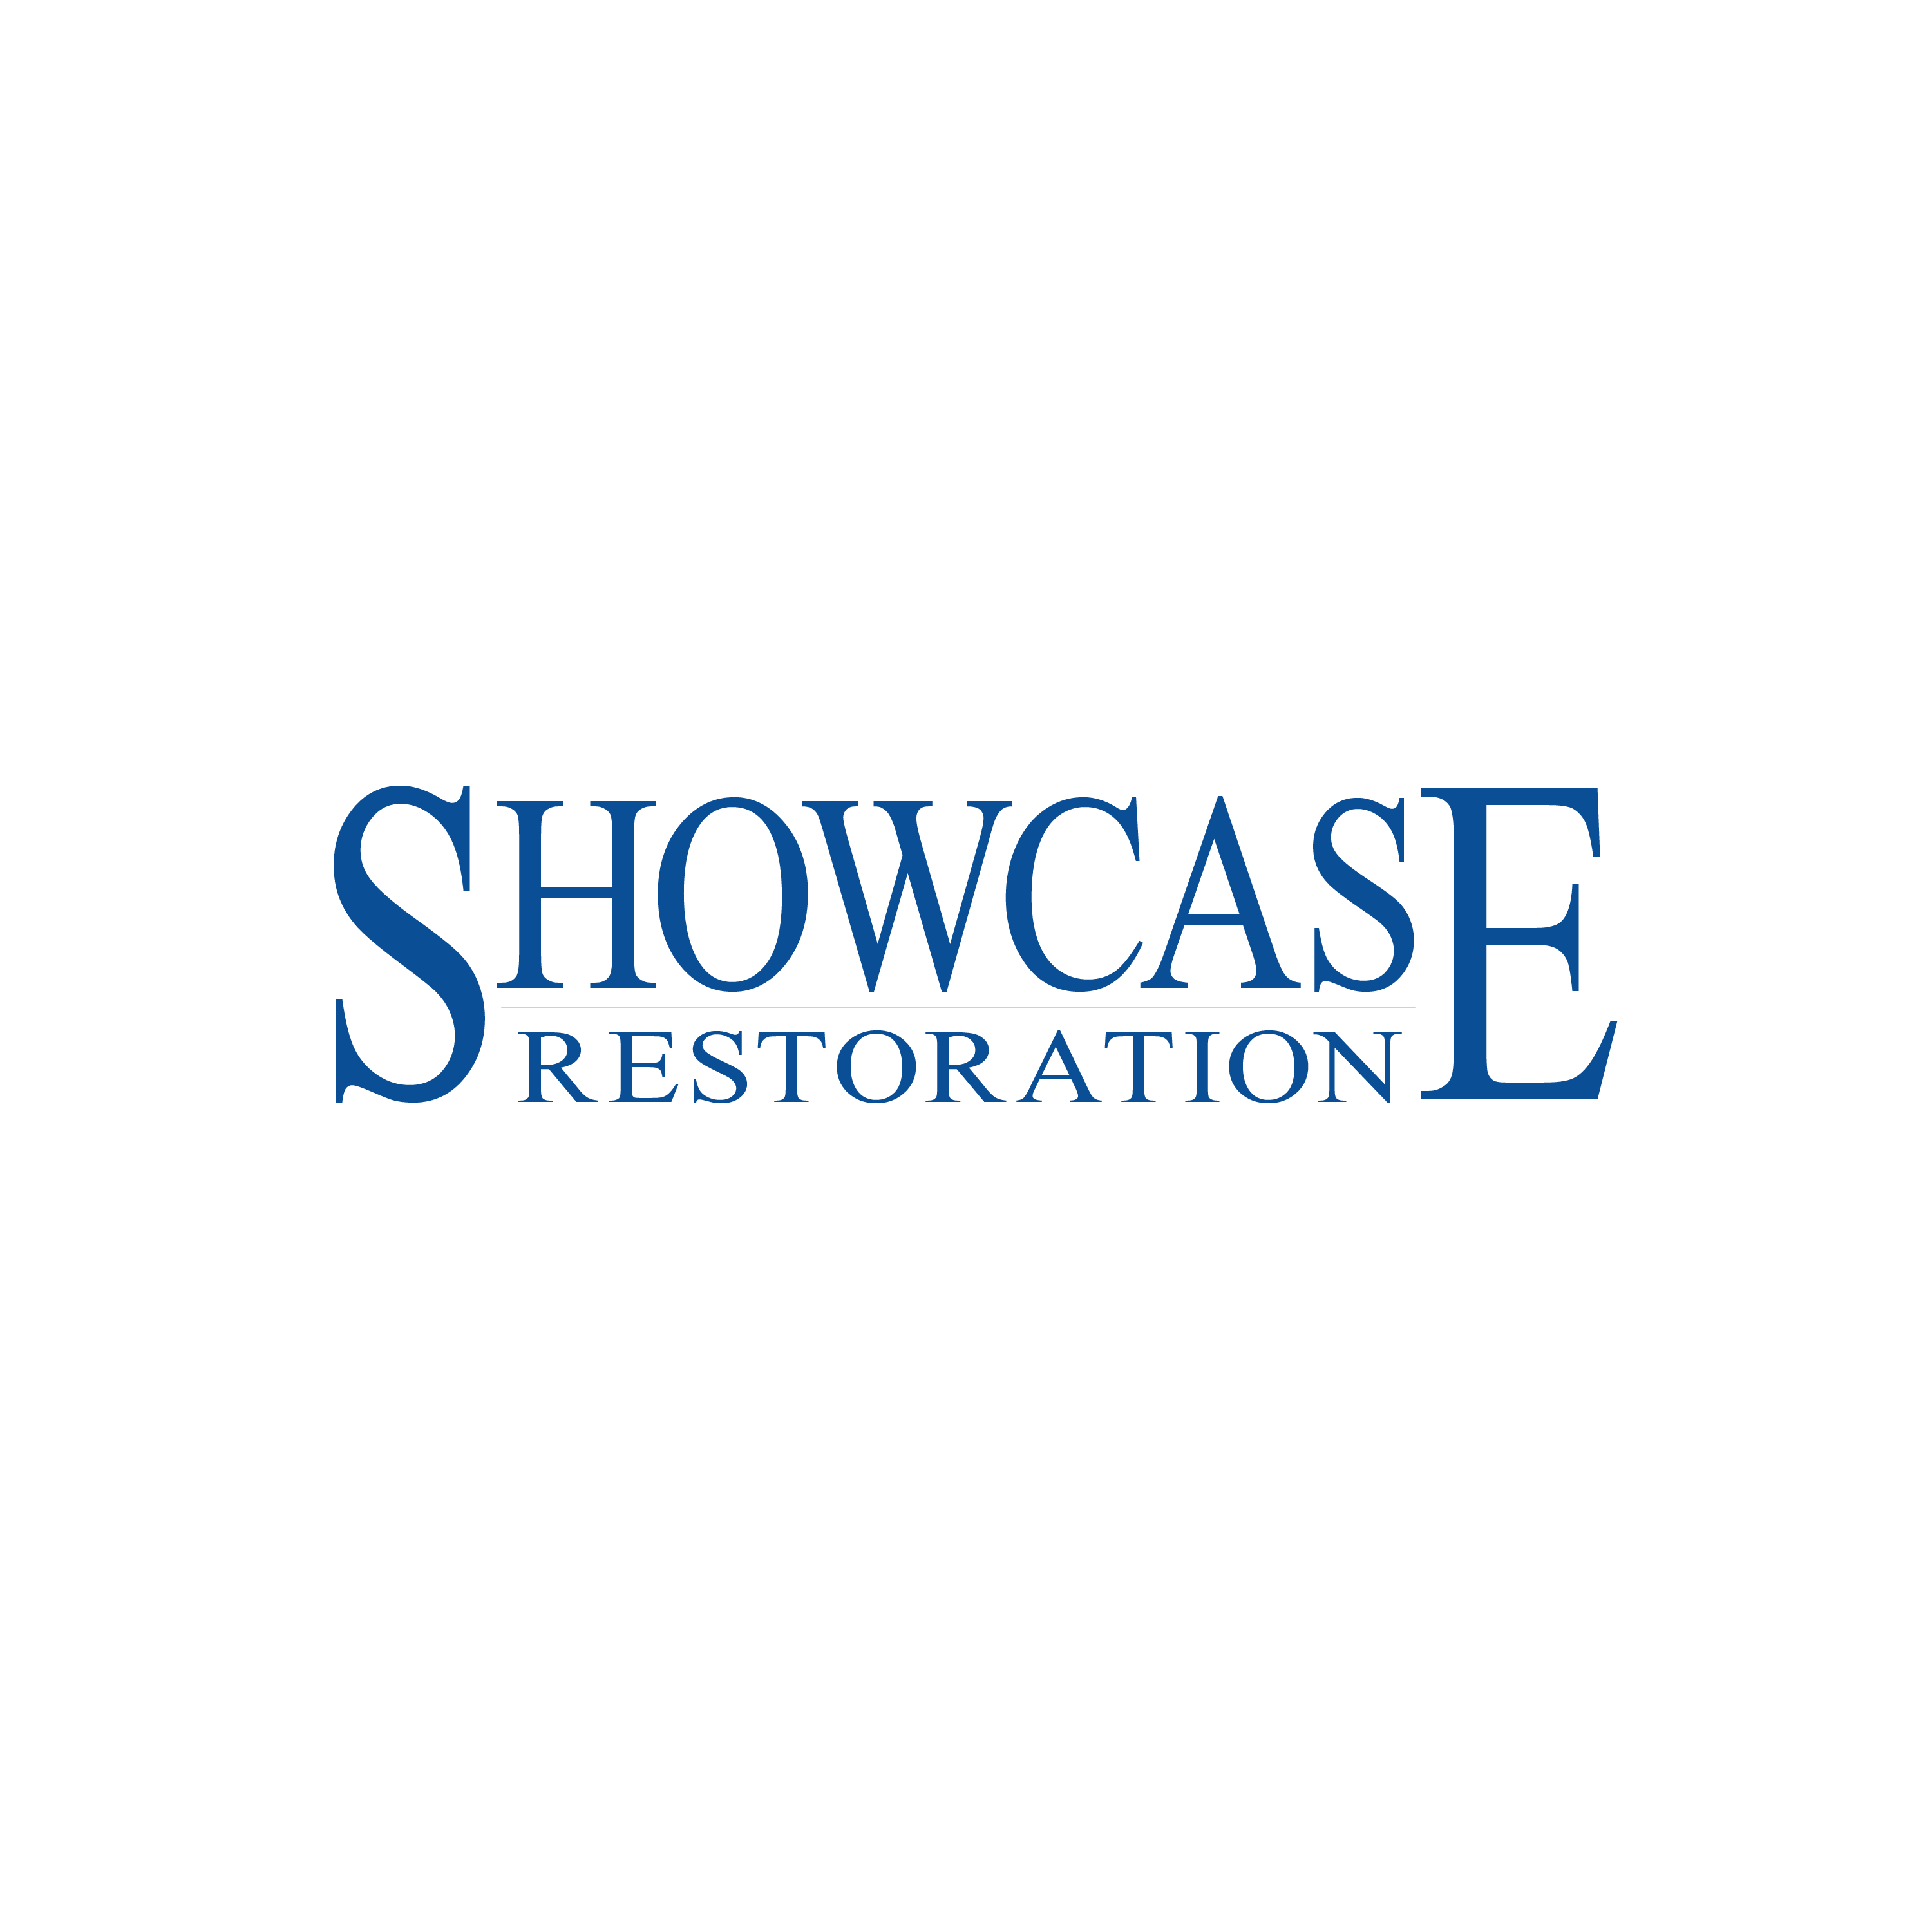 Showcase Restoration logo